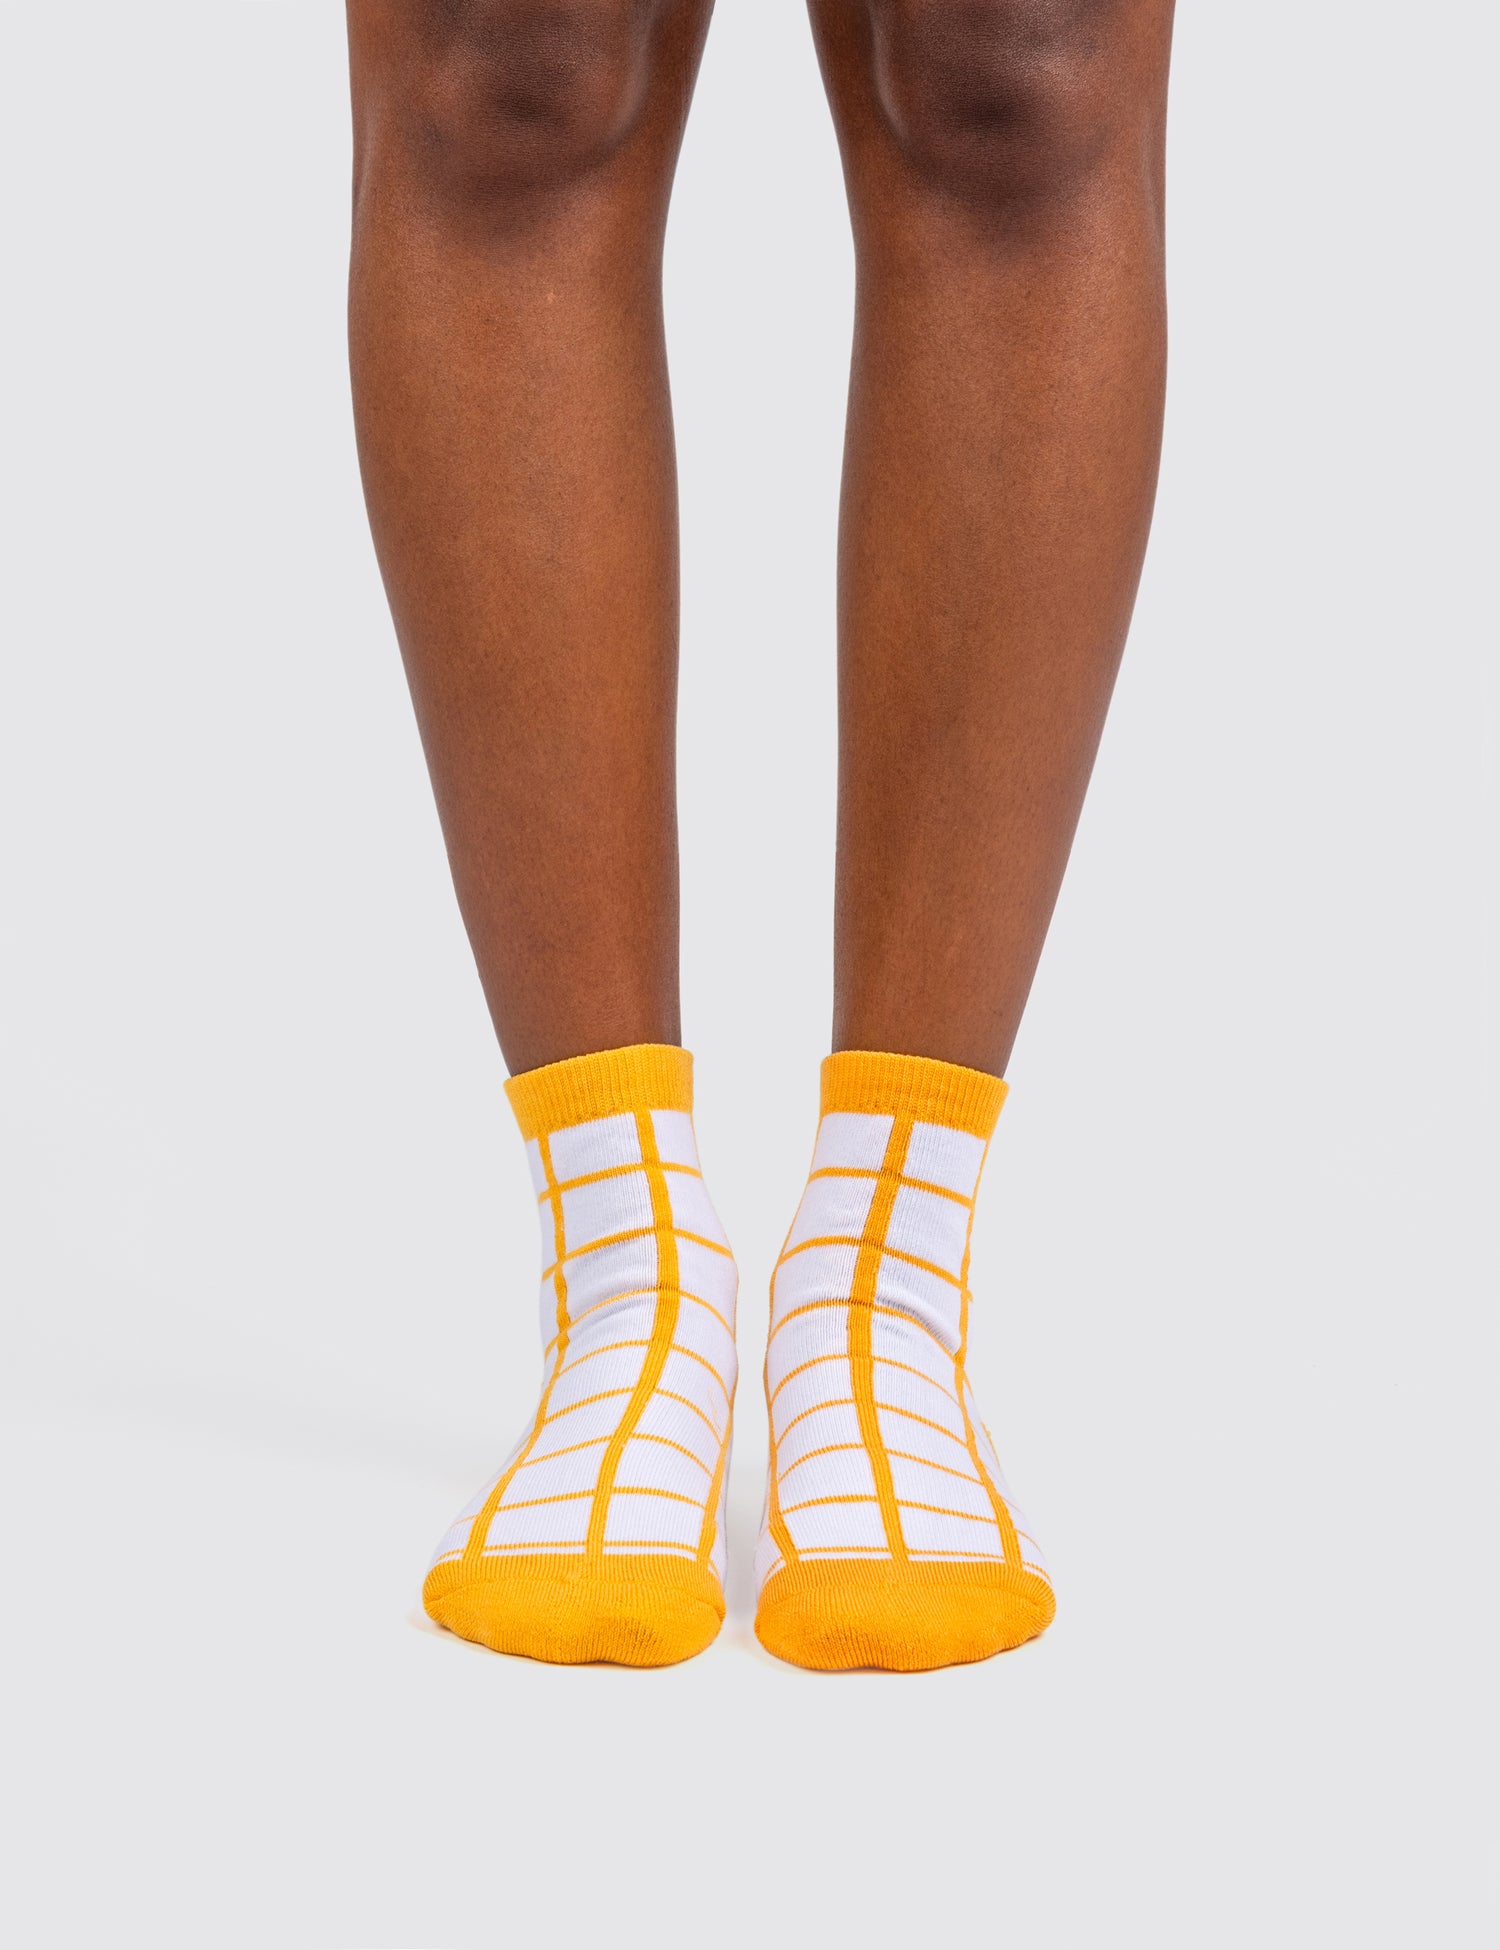 Woman's feet wearing the grid socks 